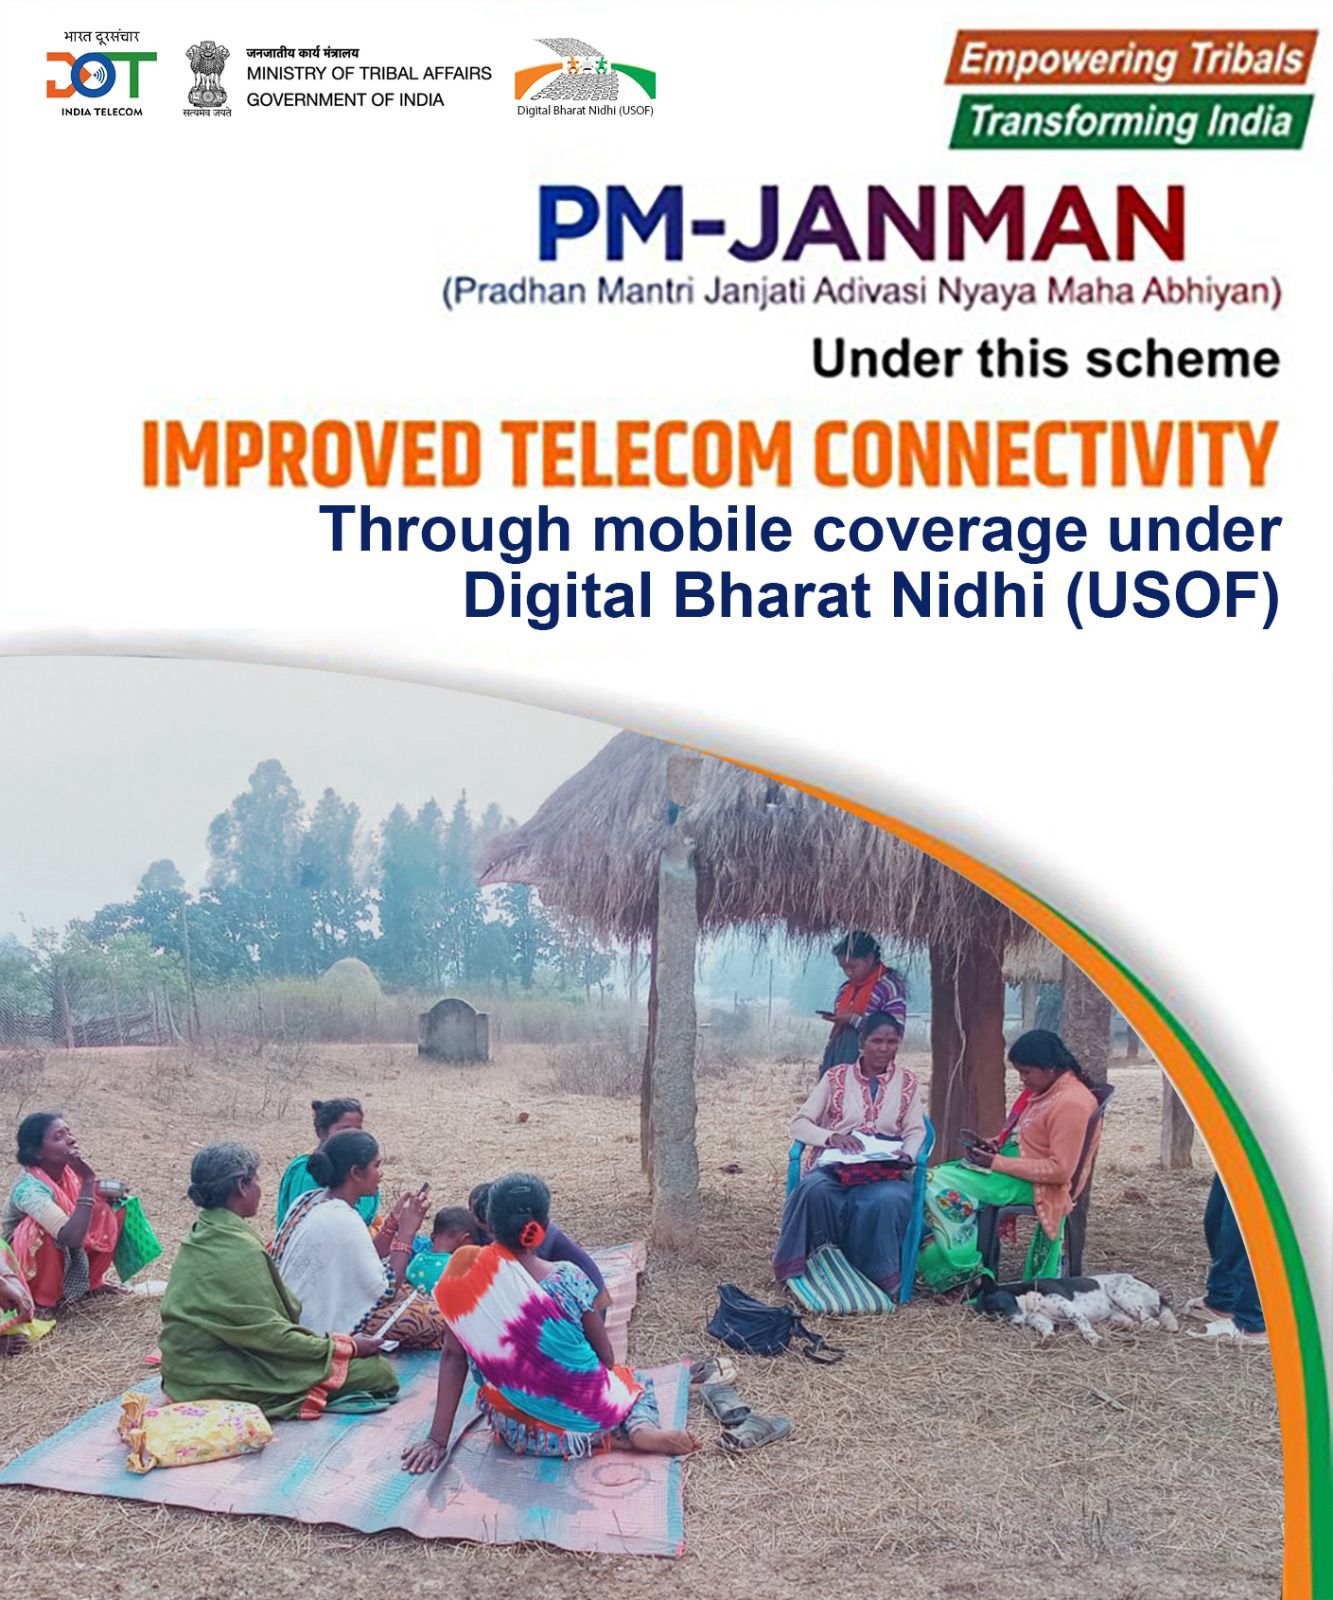 Digital Bharat Nidhi ensuring mobile coverage through PM JANMAN